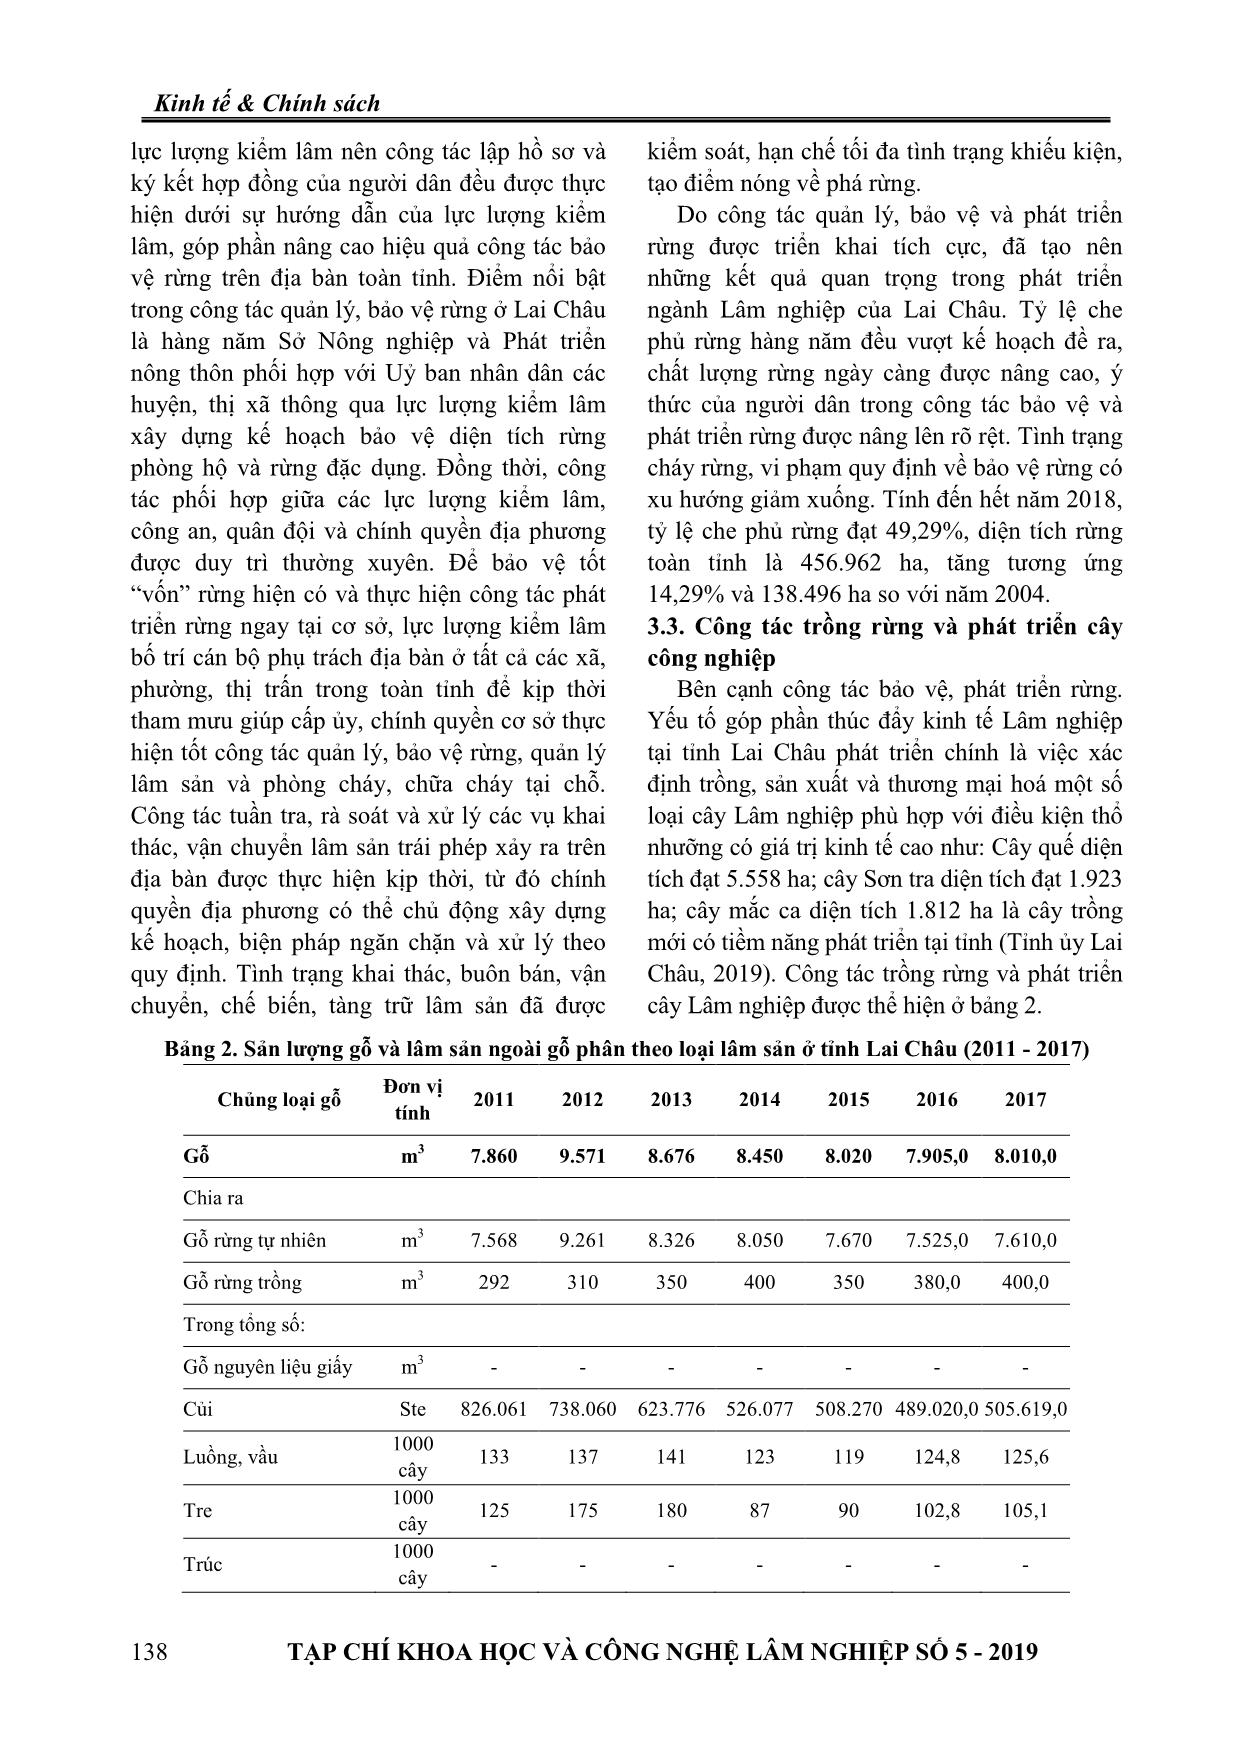 Phát triển lâm nghiệp bền vững ở Lai Châu hiện nay trang 4